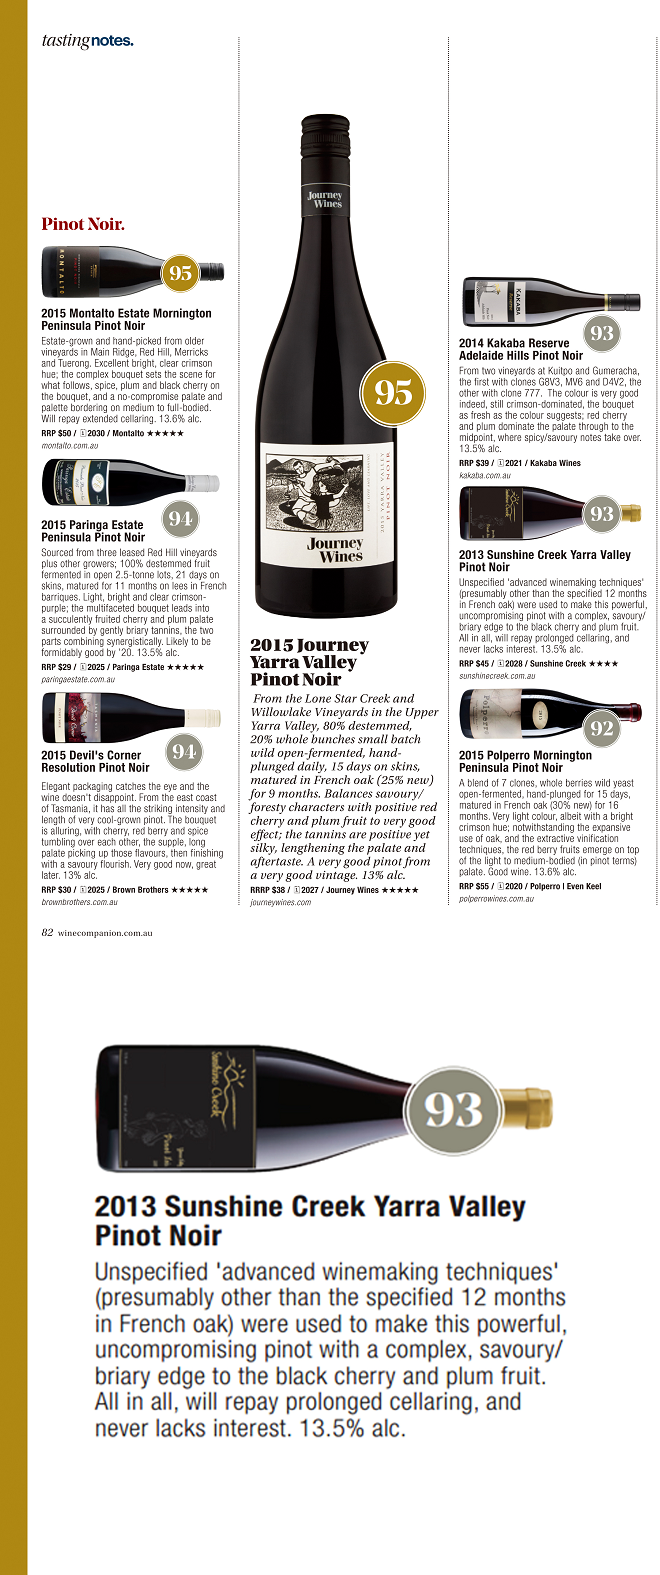 阳光酒庄庄园系列黑比诺2013 荣获《澳大利亚葡萄酒指南》杂志93分